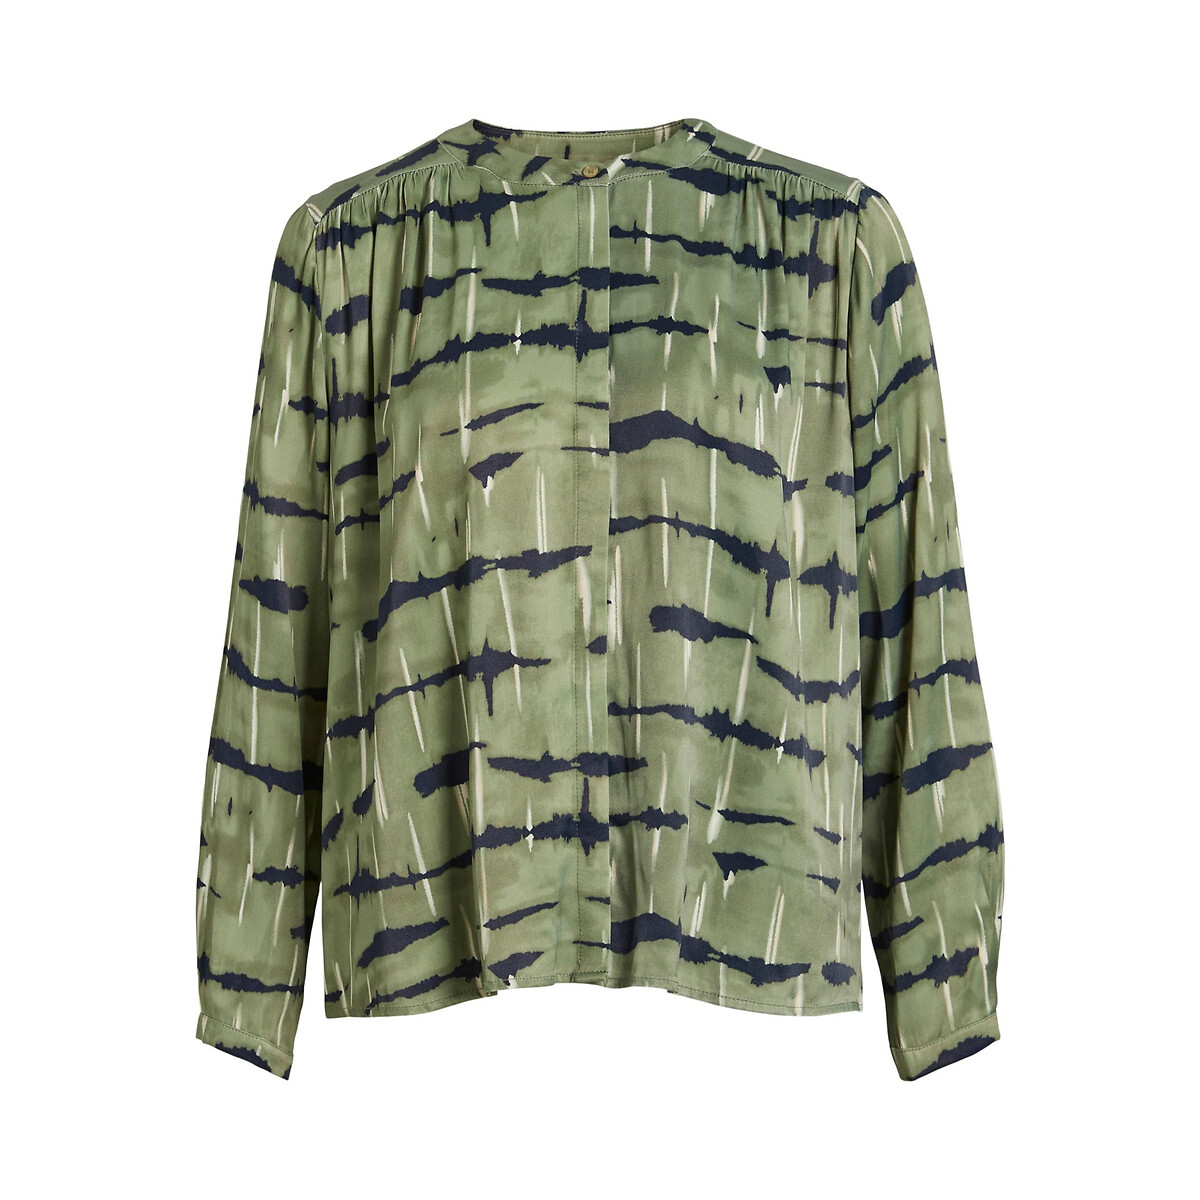 Блузка атласная принт зебра 40 (FR) - 46 (RUS) зеленый блузка с манишкой на пуговицах 40 fr 46 rus белый